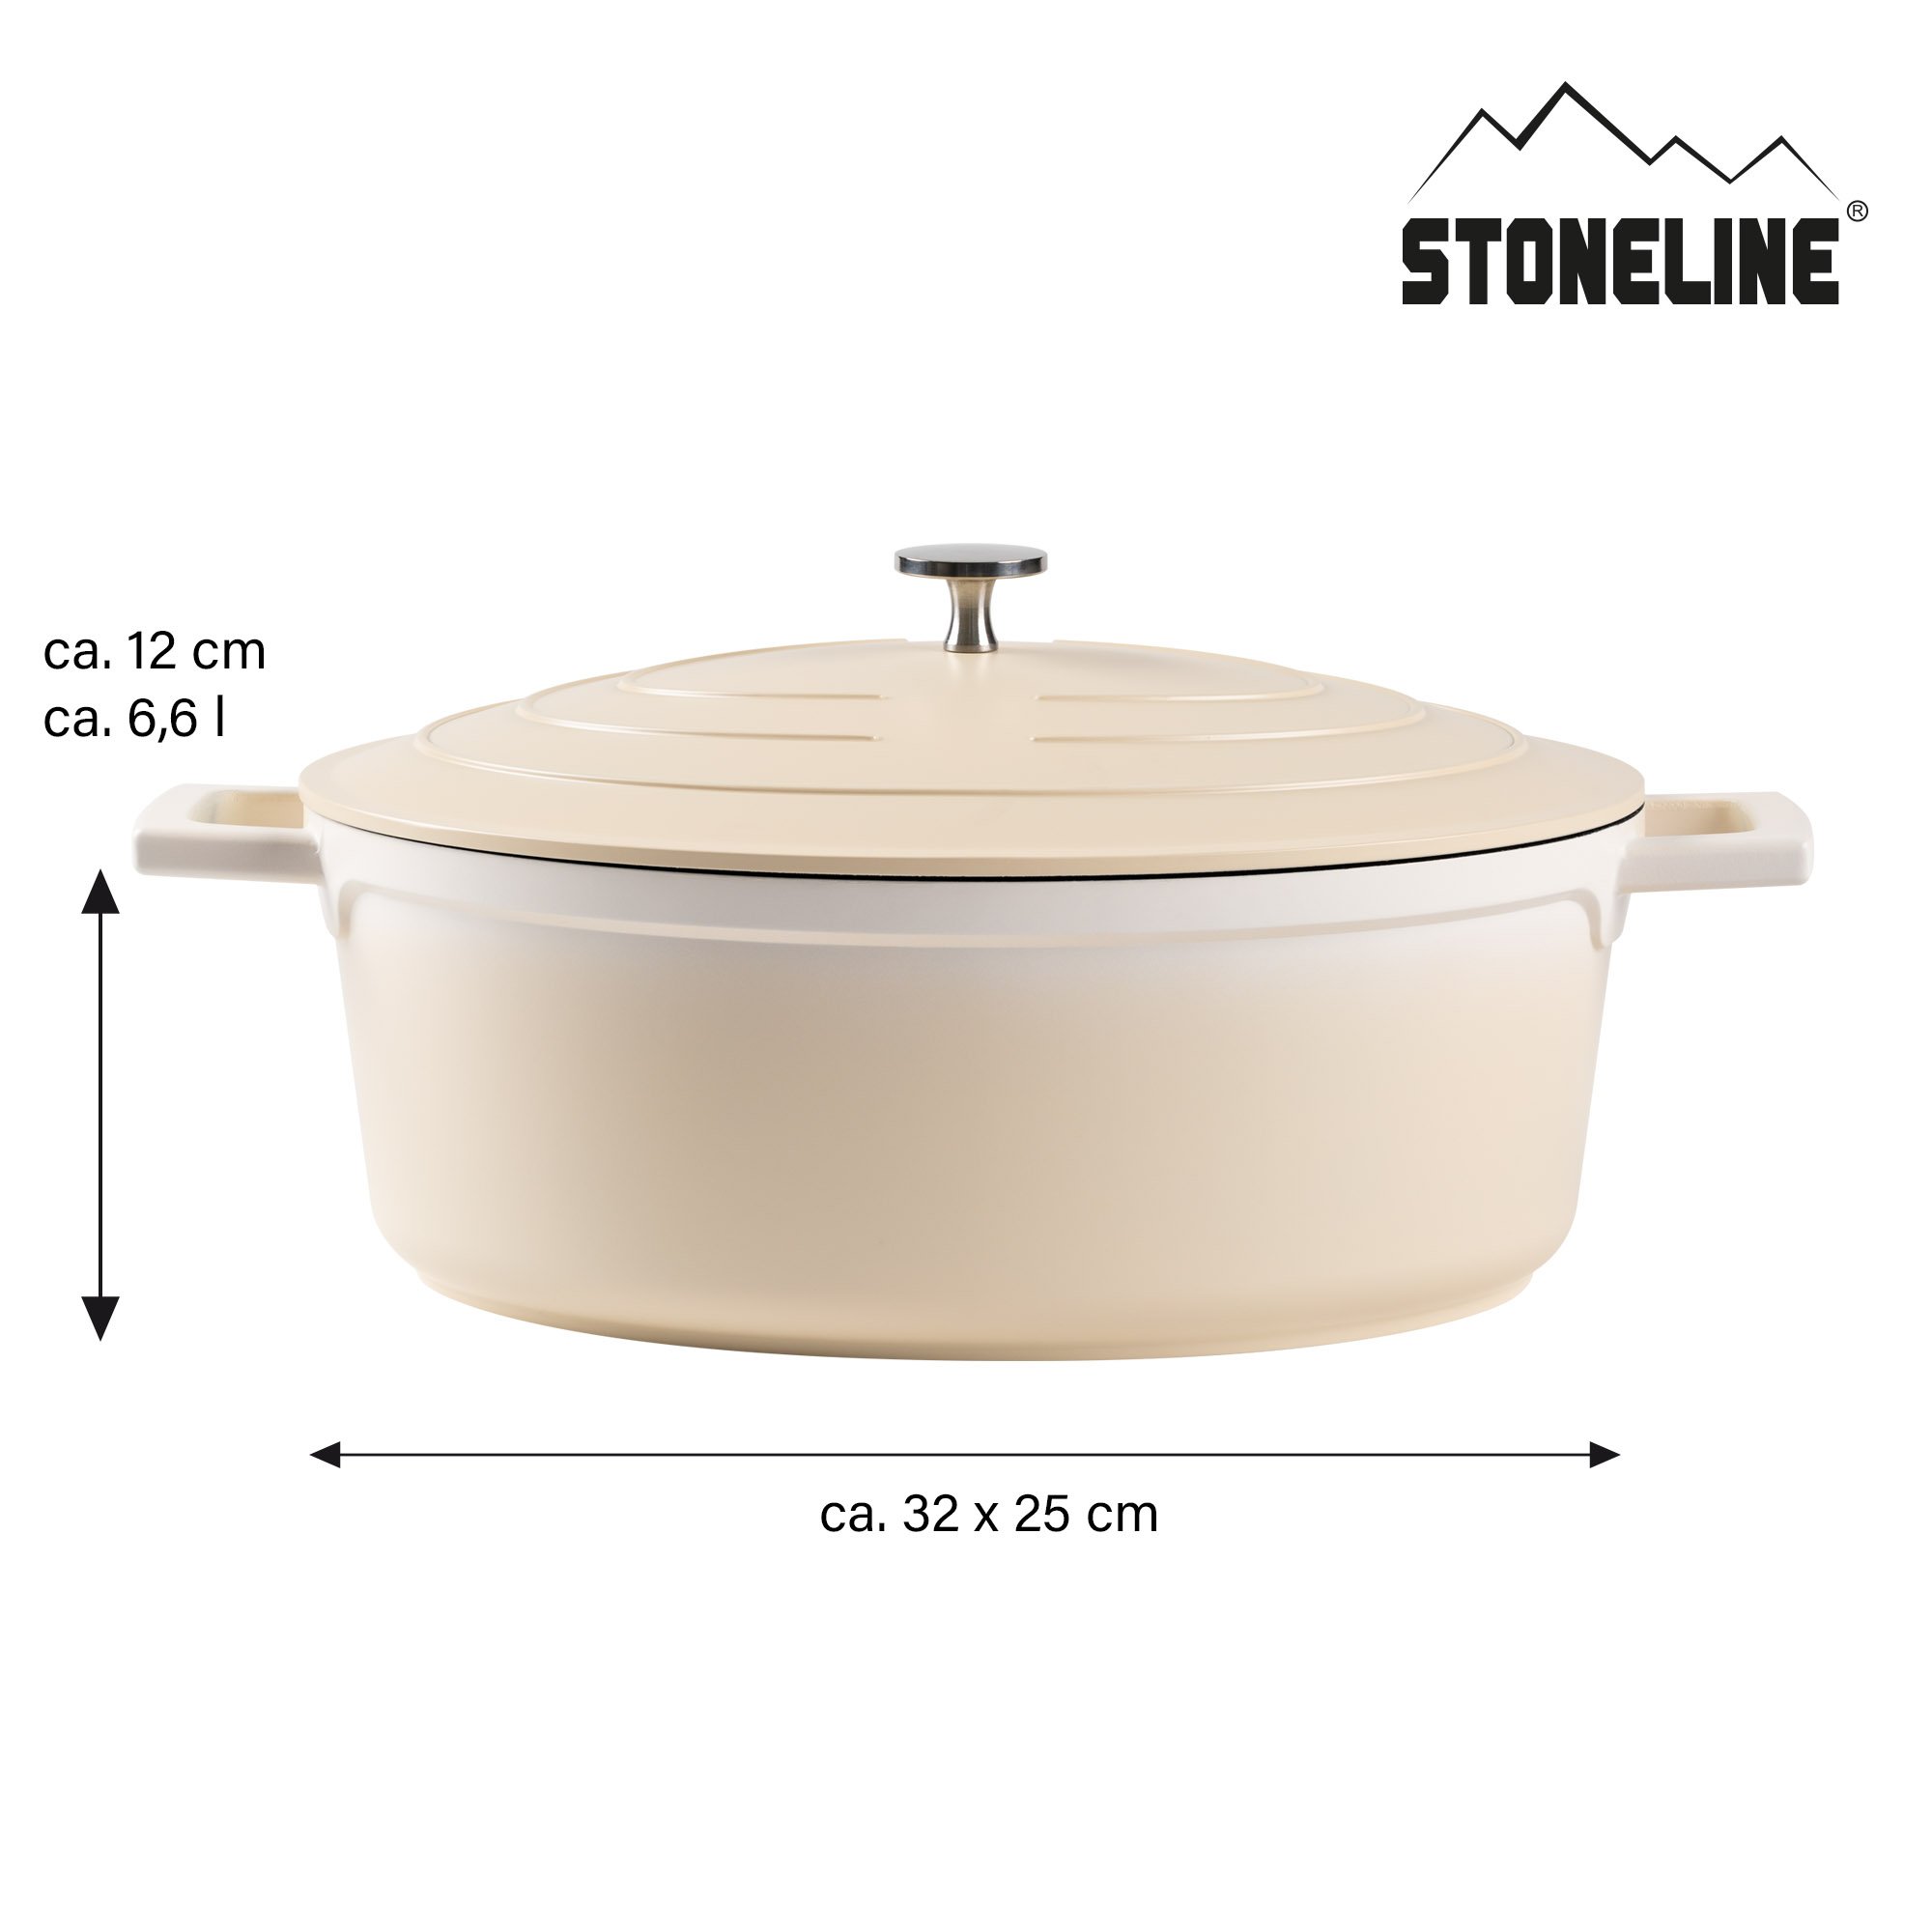 STONELINE® Creme Gourmet Bräter 32x25 cm mit Deckel, Backofen und Induktion geeignet, Antihaft